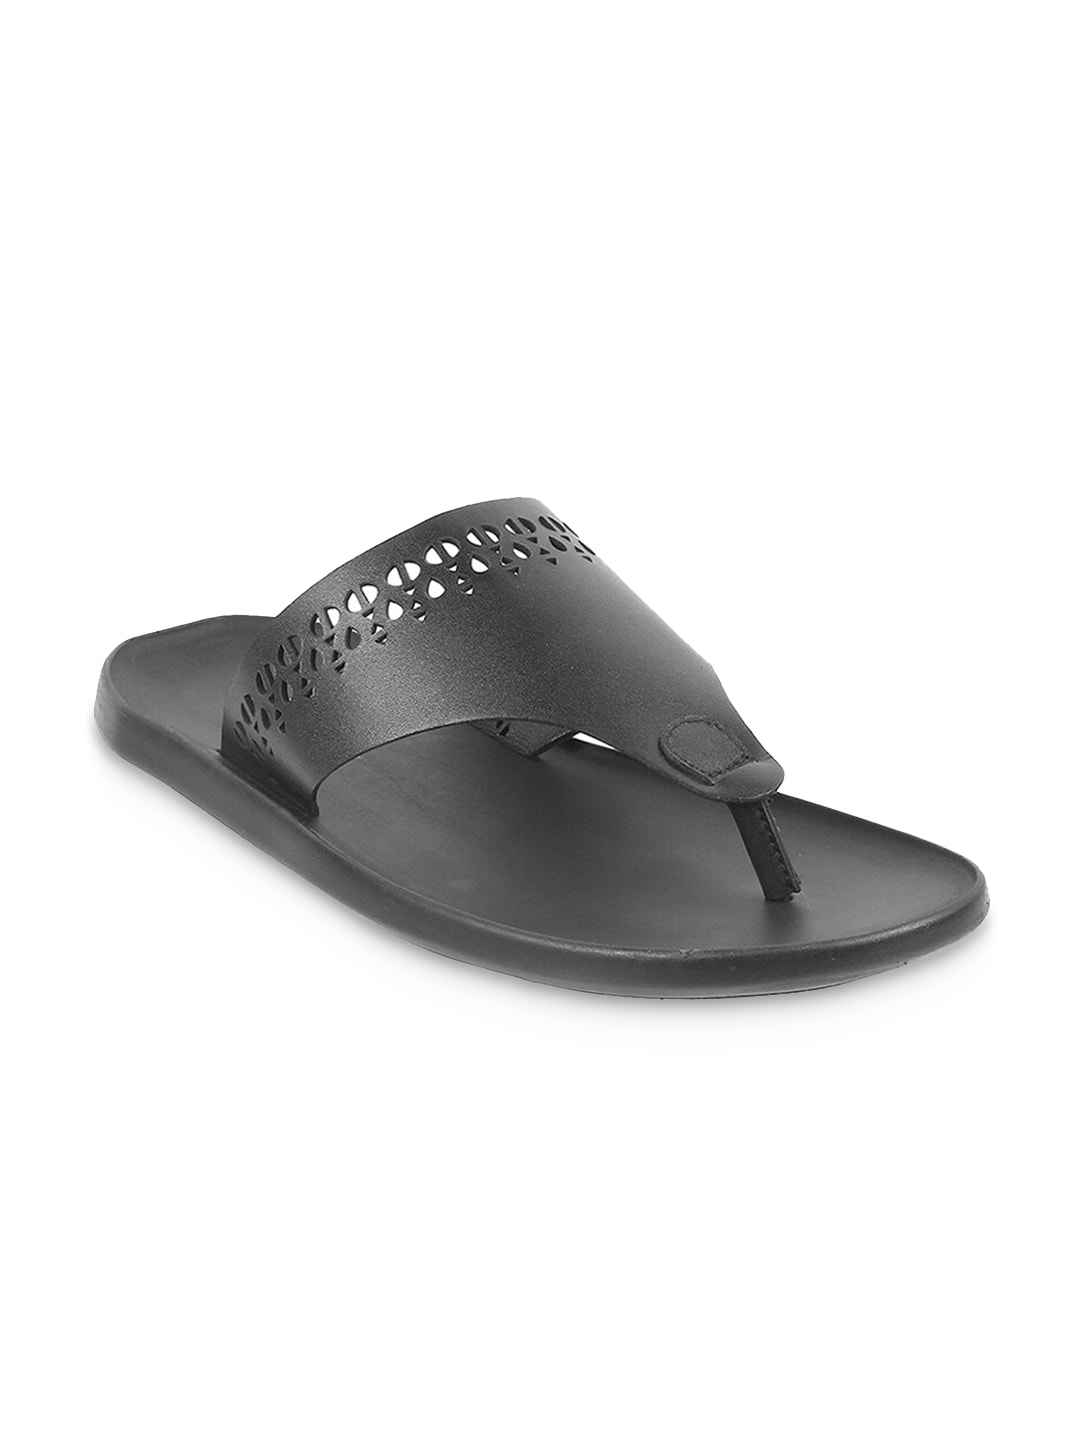 Metro Men Open Toe Comfort Sandals With Laser Cuts